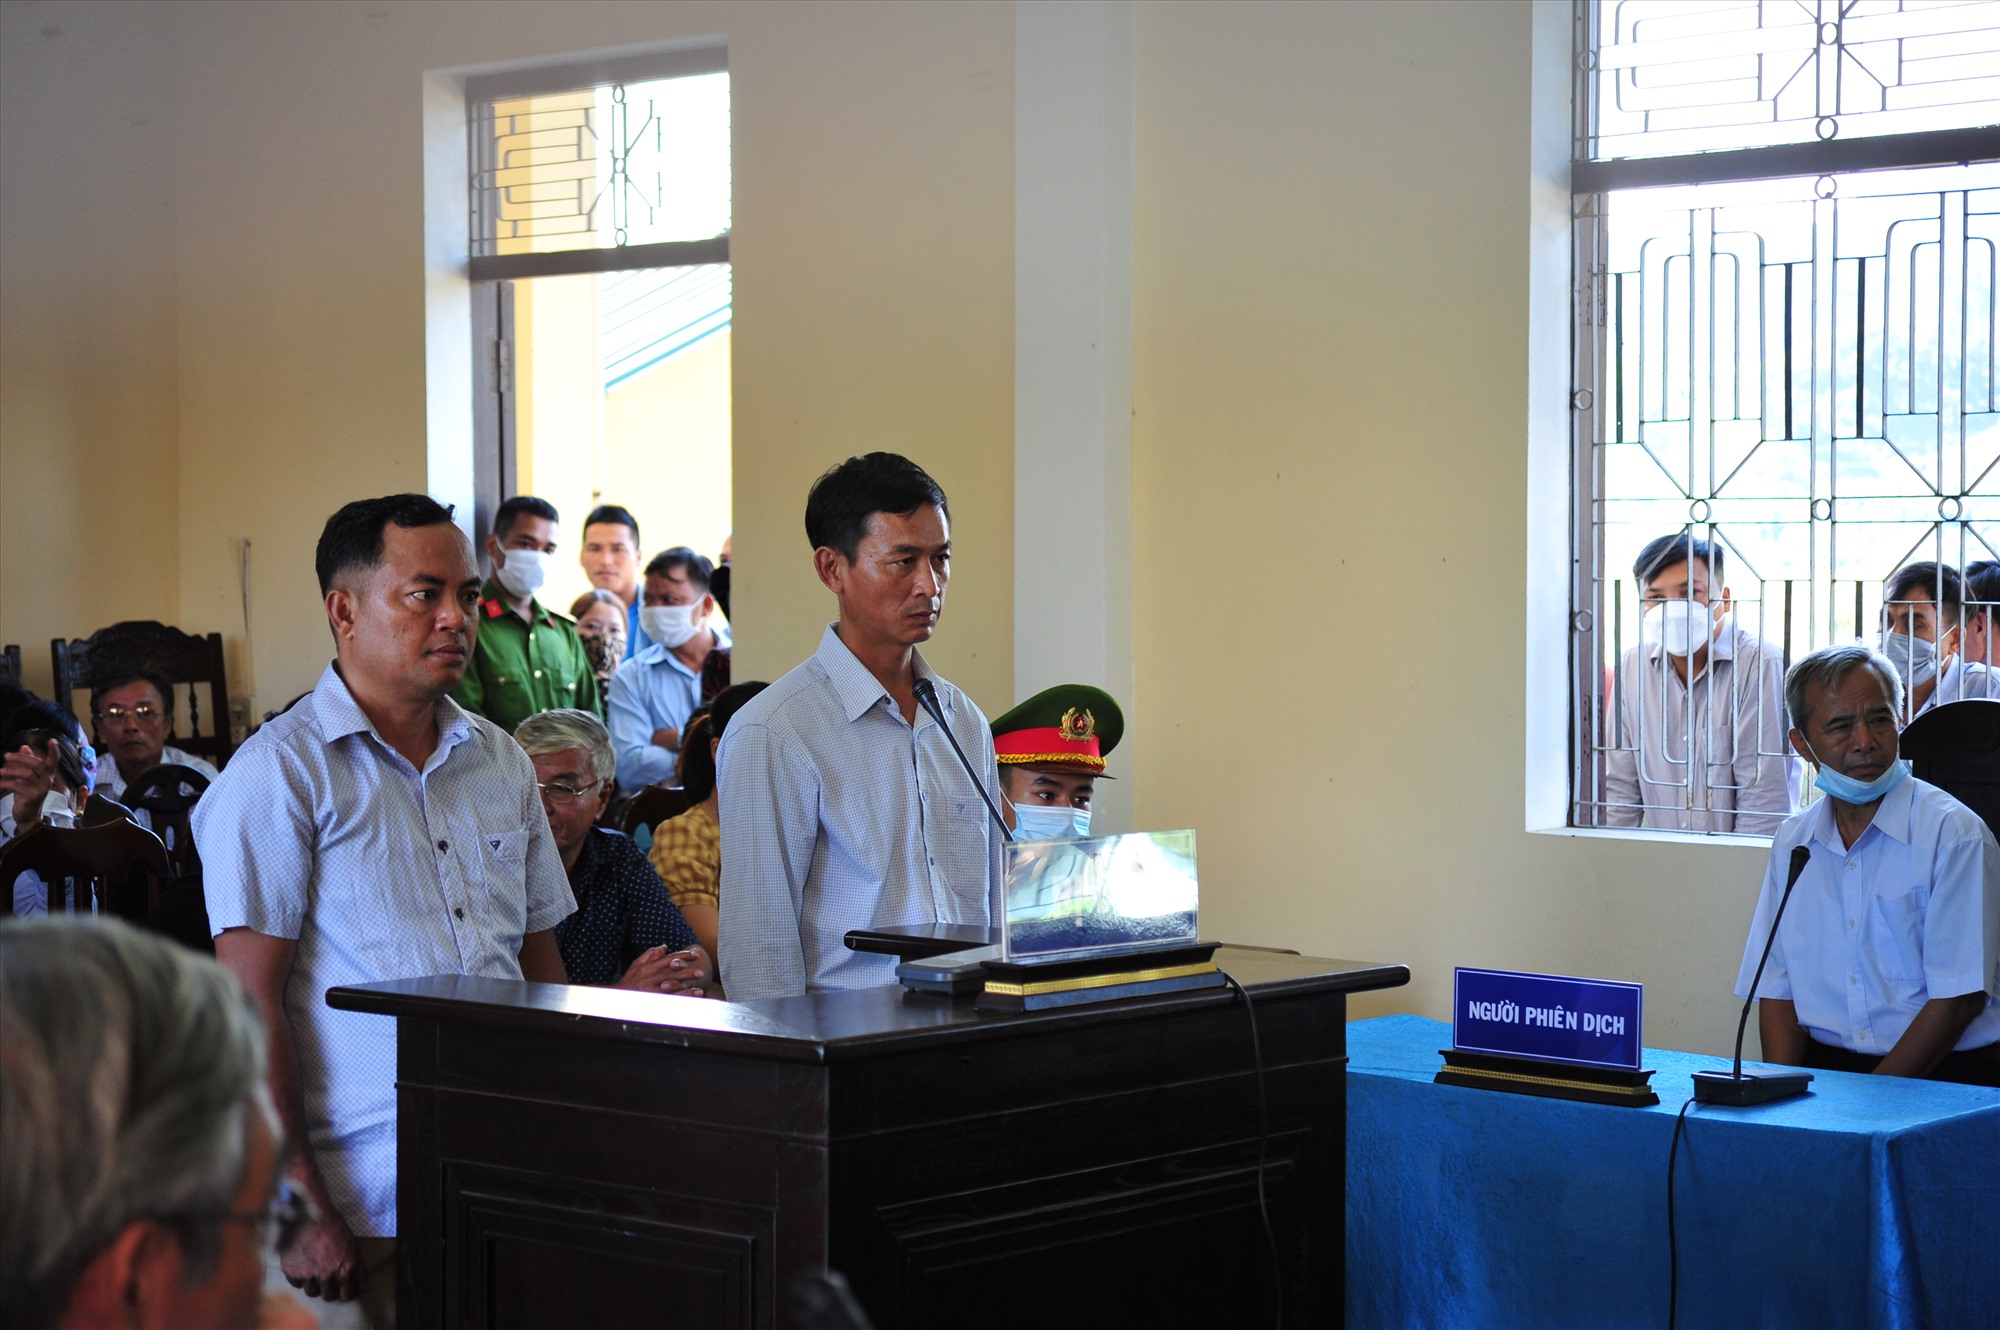 Bị cáo Hồ Xuân Hoàng (bên trái) bị tuyên phạt 24 tháng tù giam; bị cáo Hoàng Đình bị tuyên phạt 18 tháng tù giam - Ảnh: Trần Tuyền